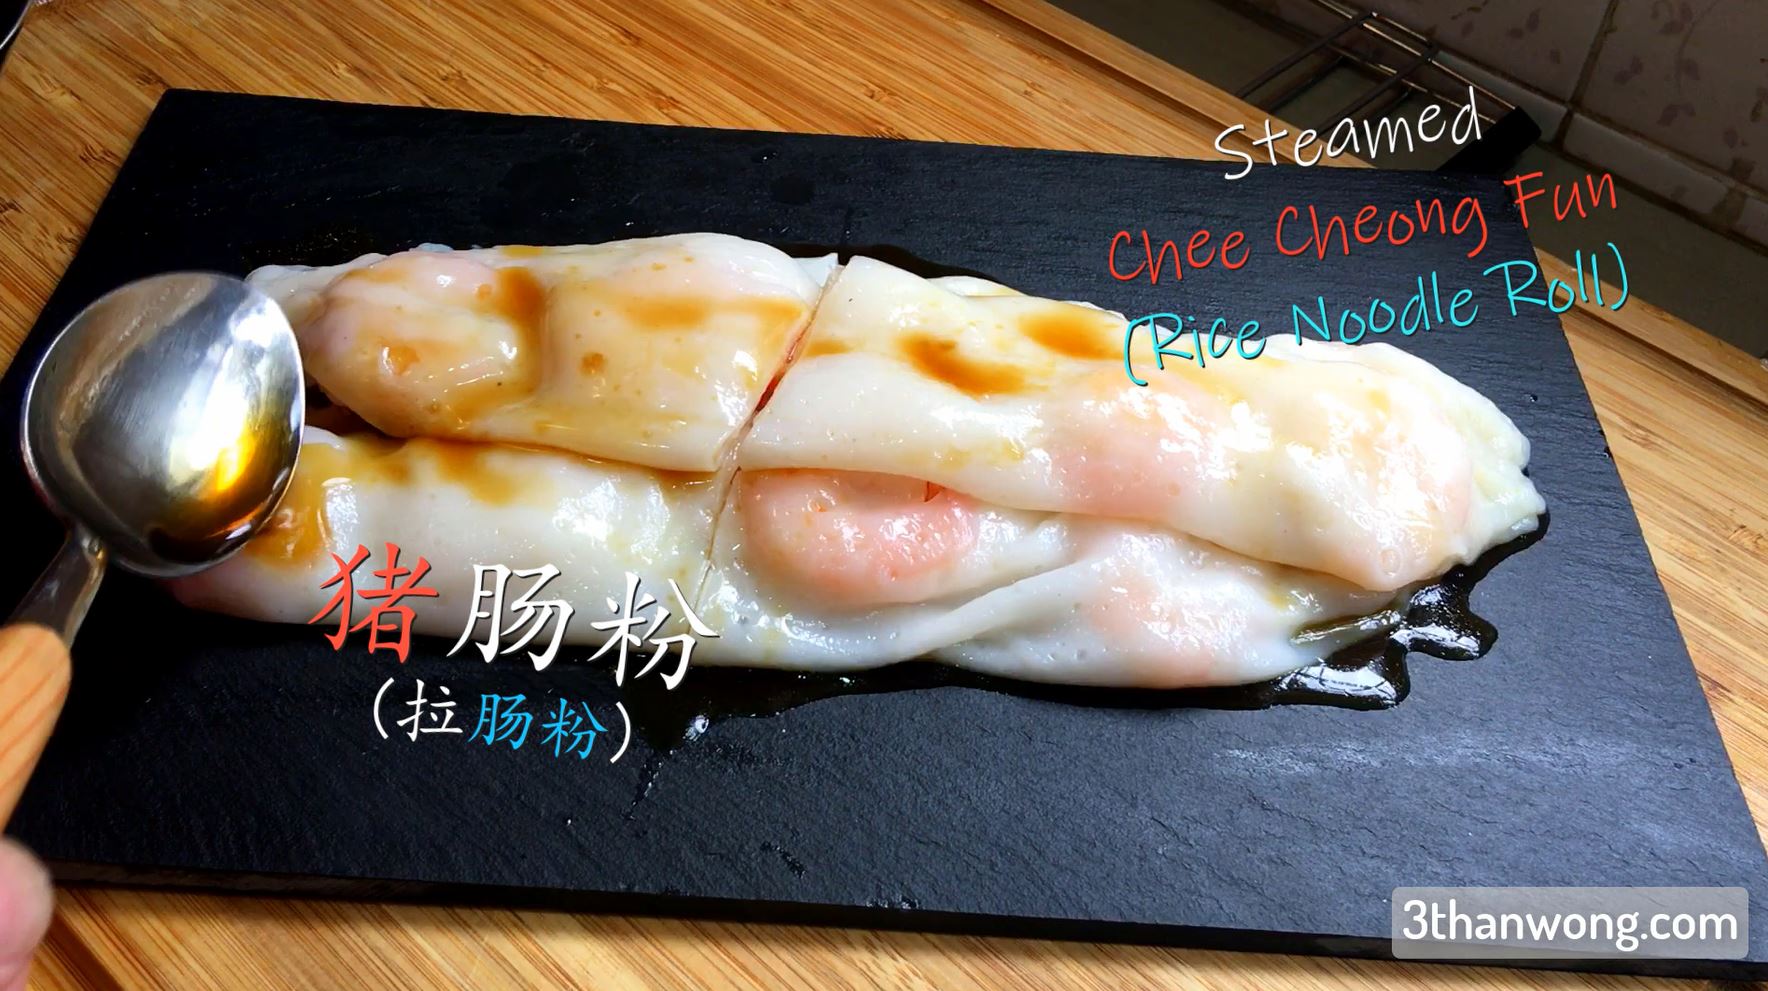 Cheung Fun Recipe – Hong Kong Rice Noodle Roll